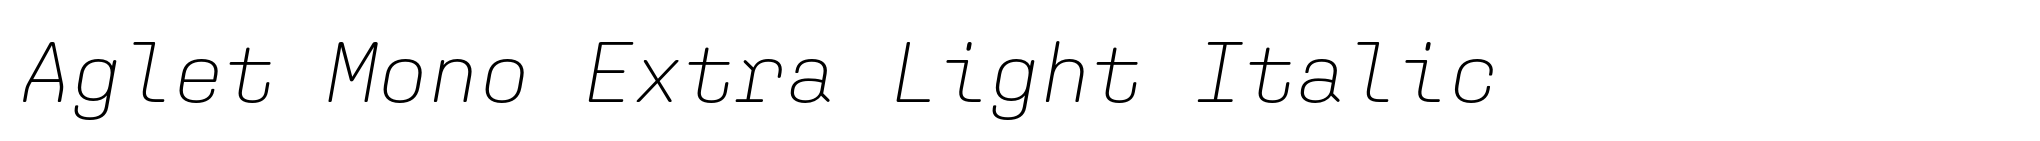 Aglet Mono Extra Light Italic image